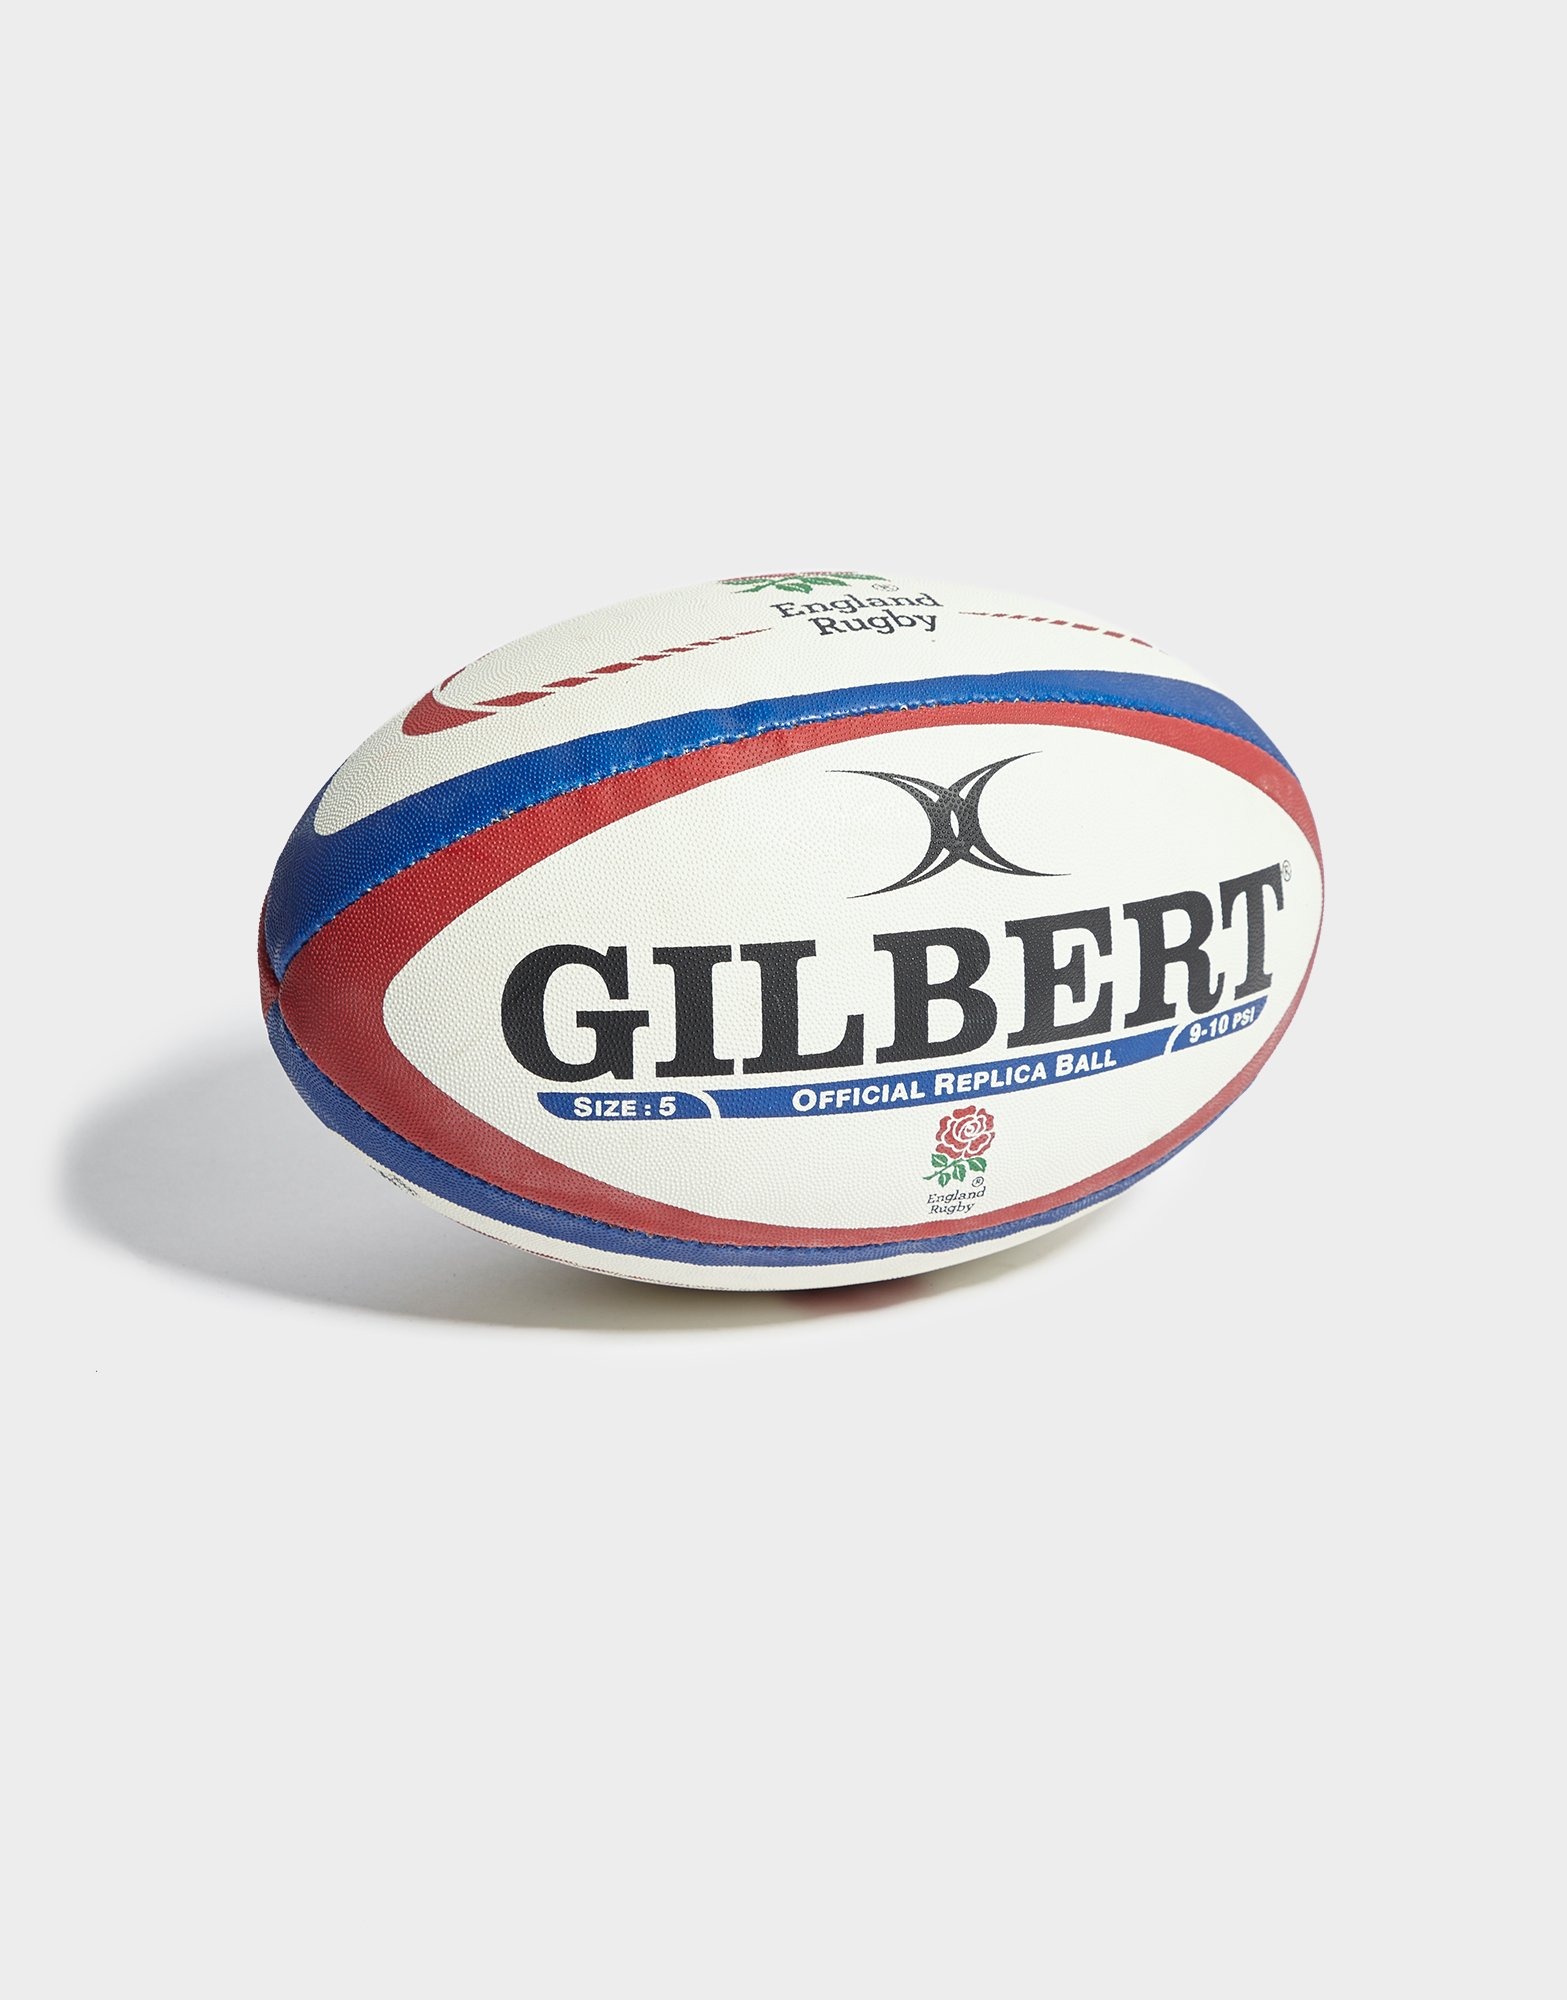 Gilbert England International Replica Rugby Ball 